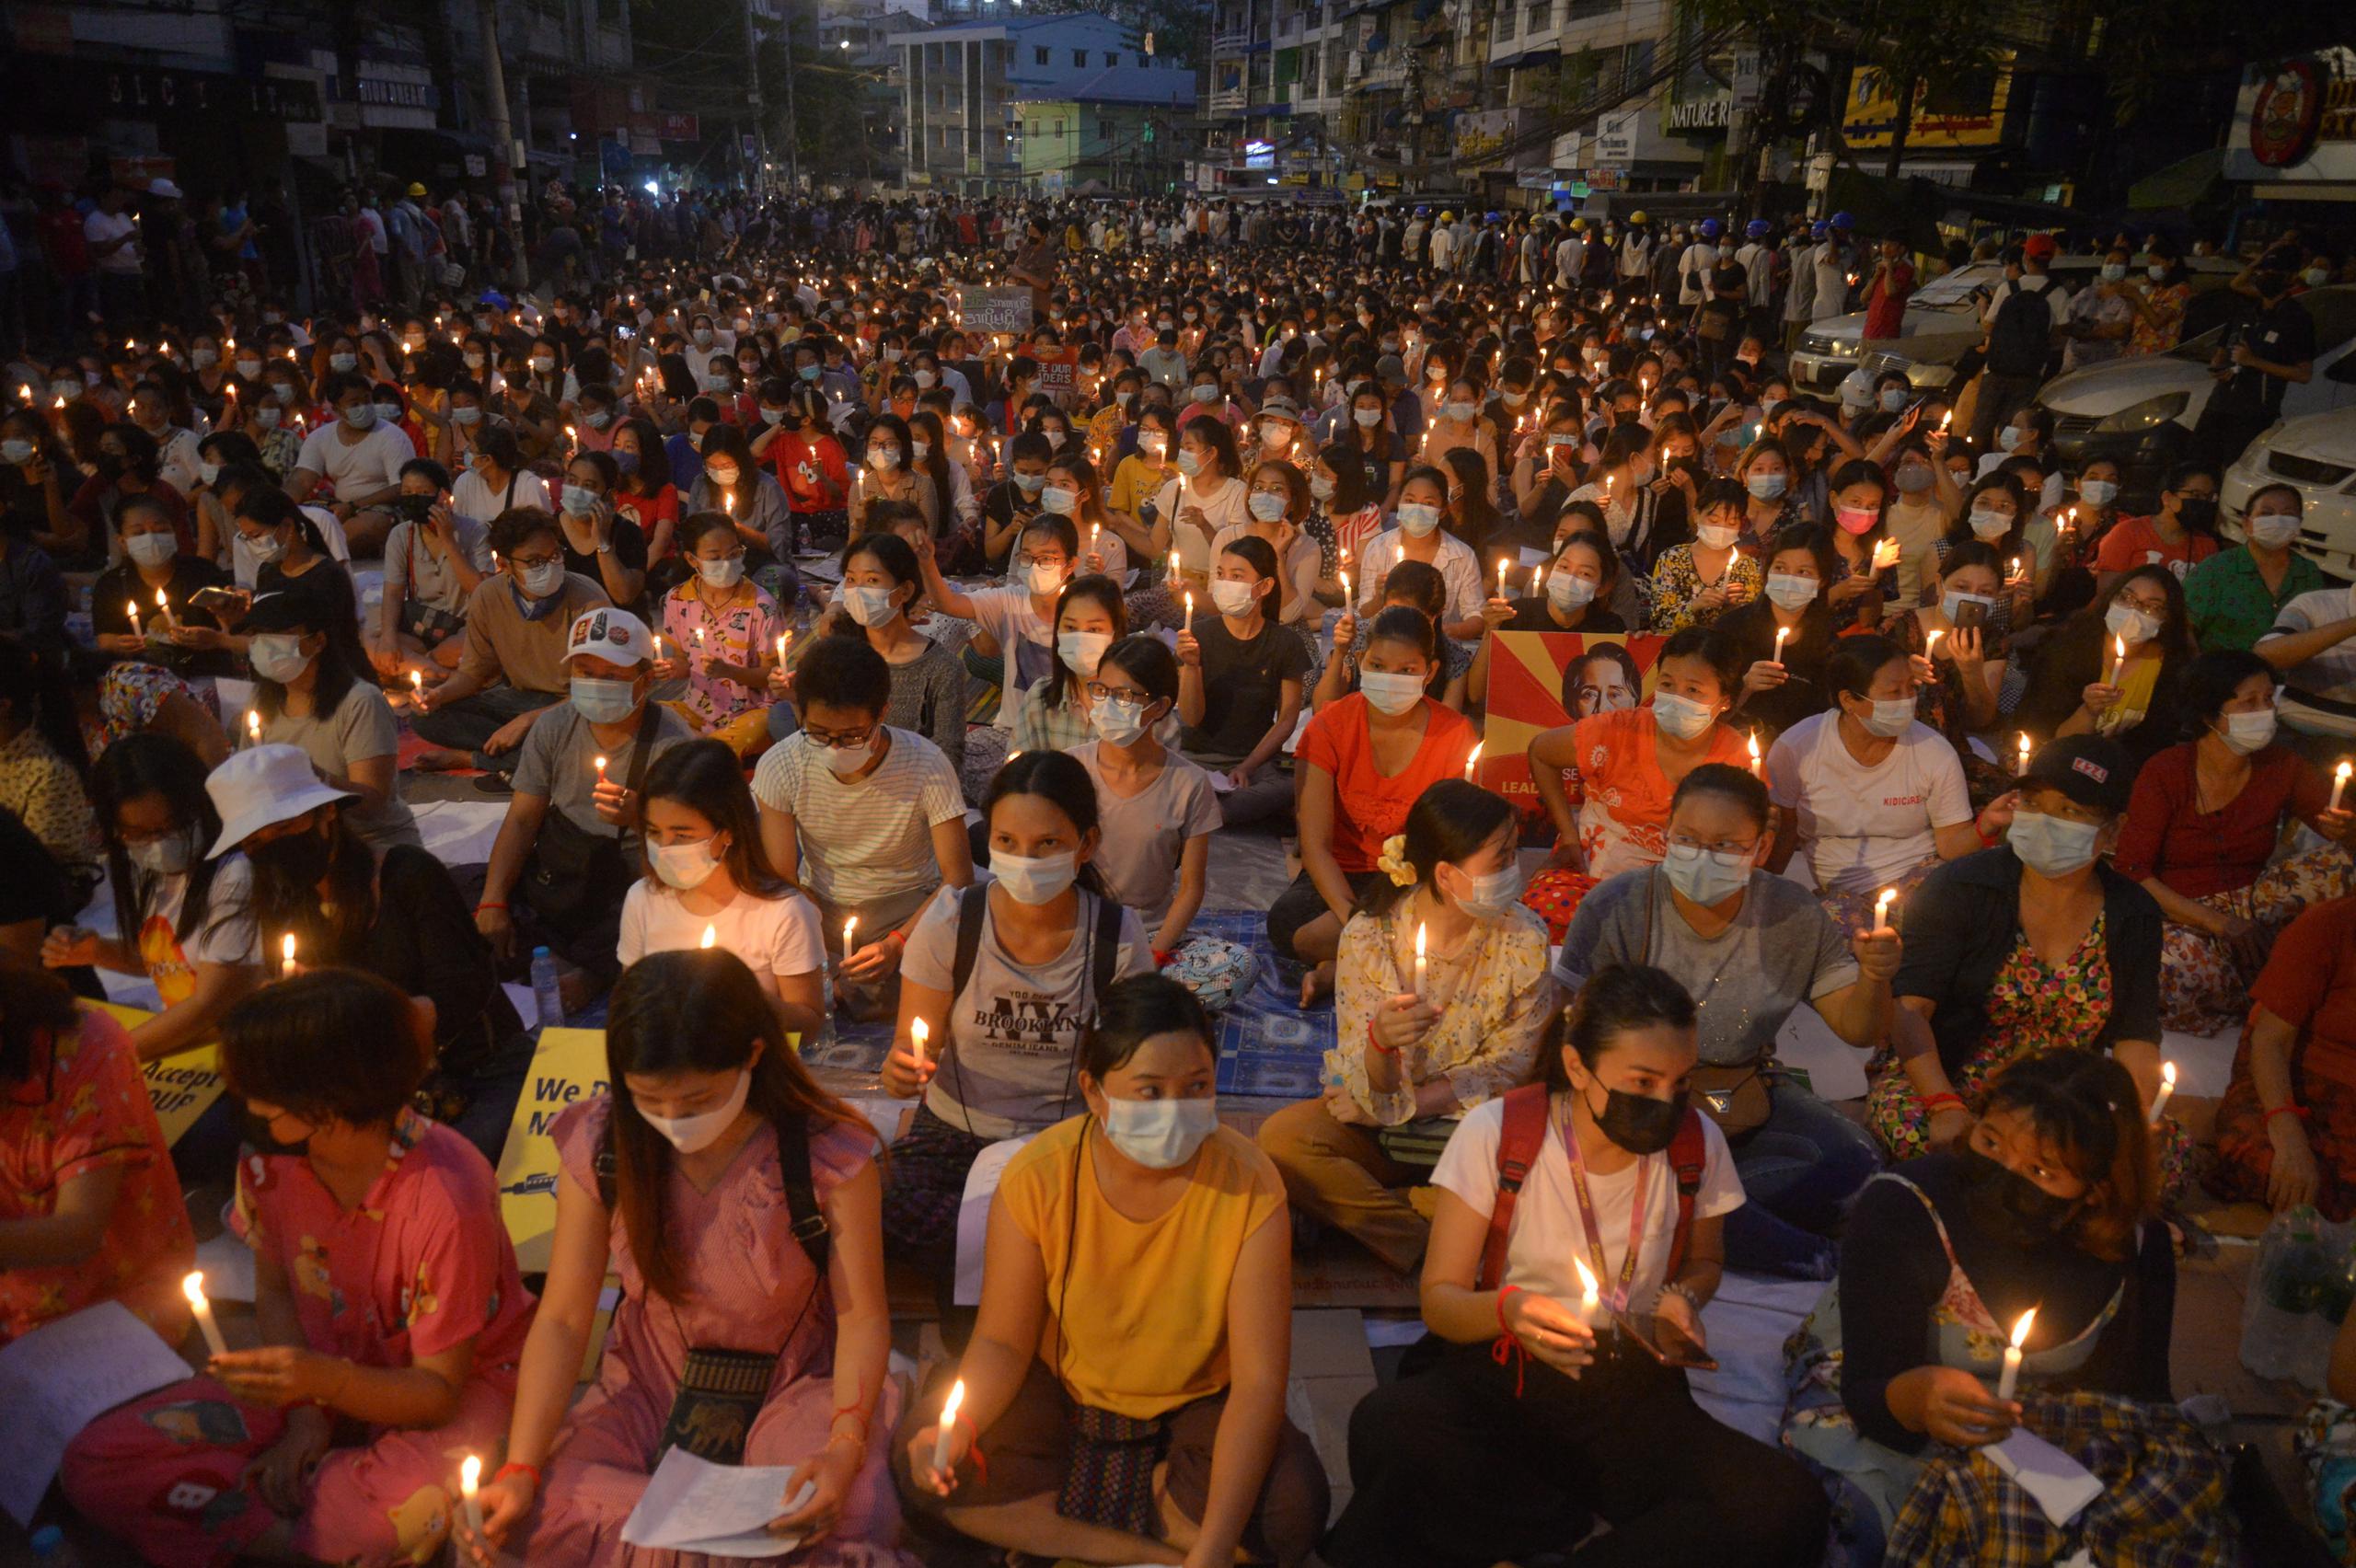 Miles de personas asistieron la noche del sábado a una vigilia pacífica en Yangon, luego de una jornada en la que más temprano en el día murieron cinco personas a manos de las fuerzas golpistas.